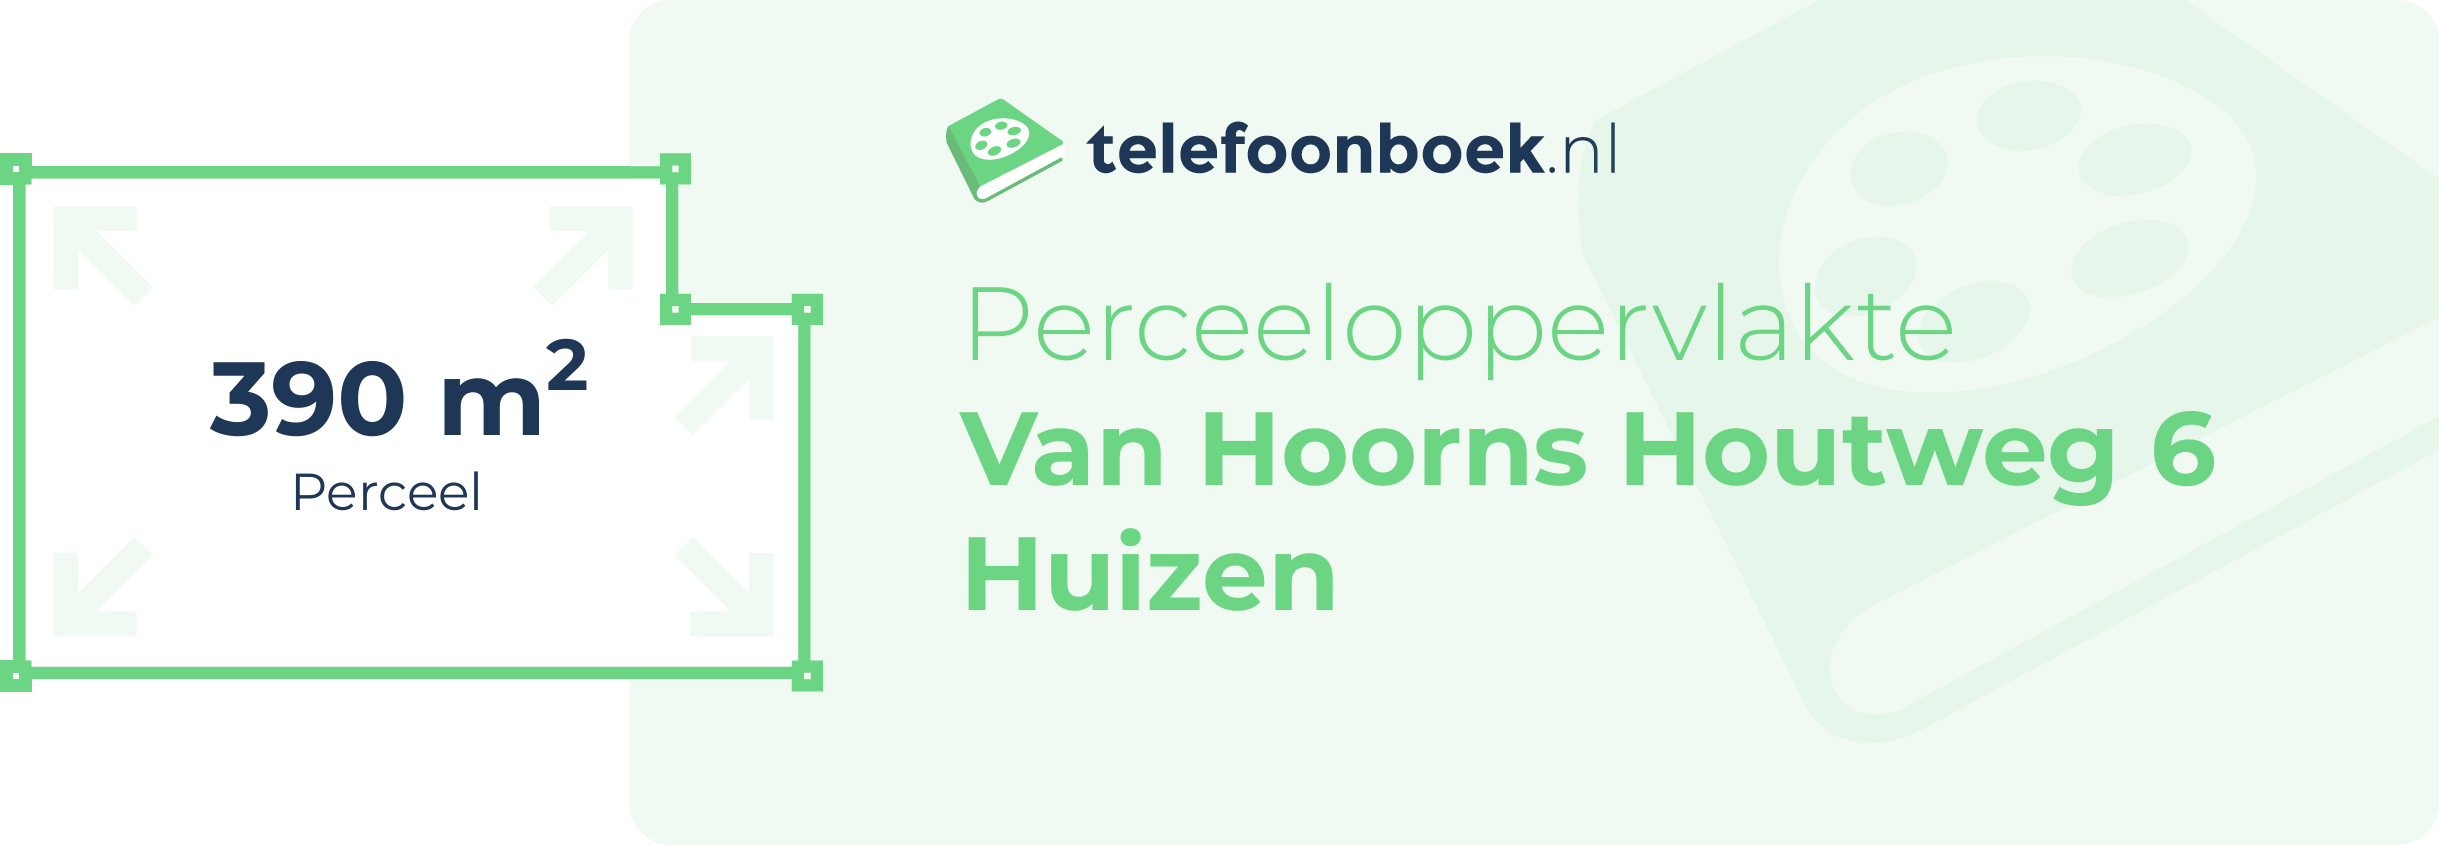 Perceeloppervlakte Van Hoorns Houtweg 6 Huizen